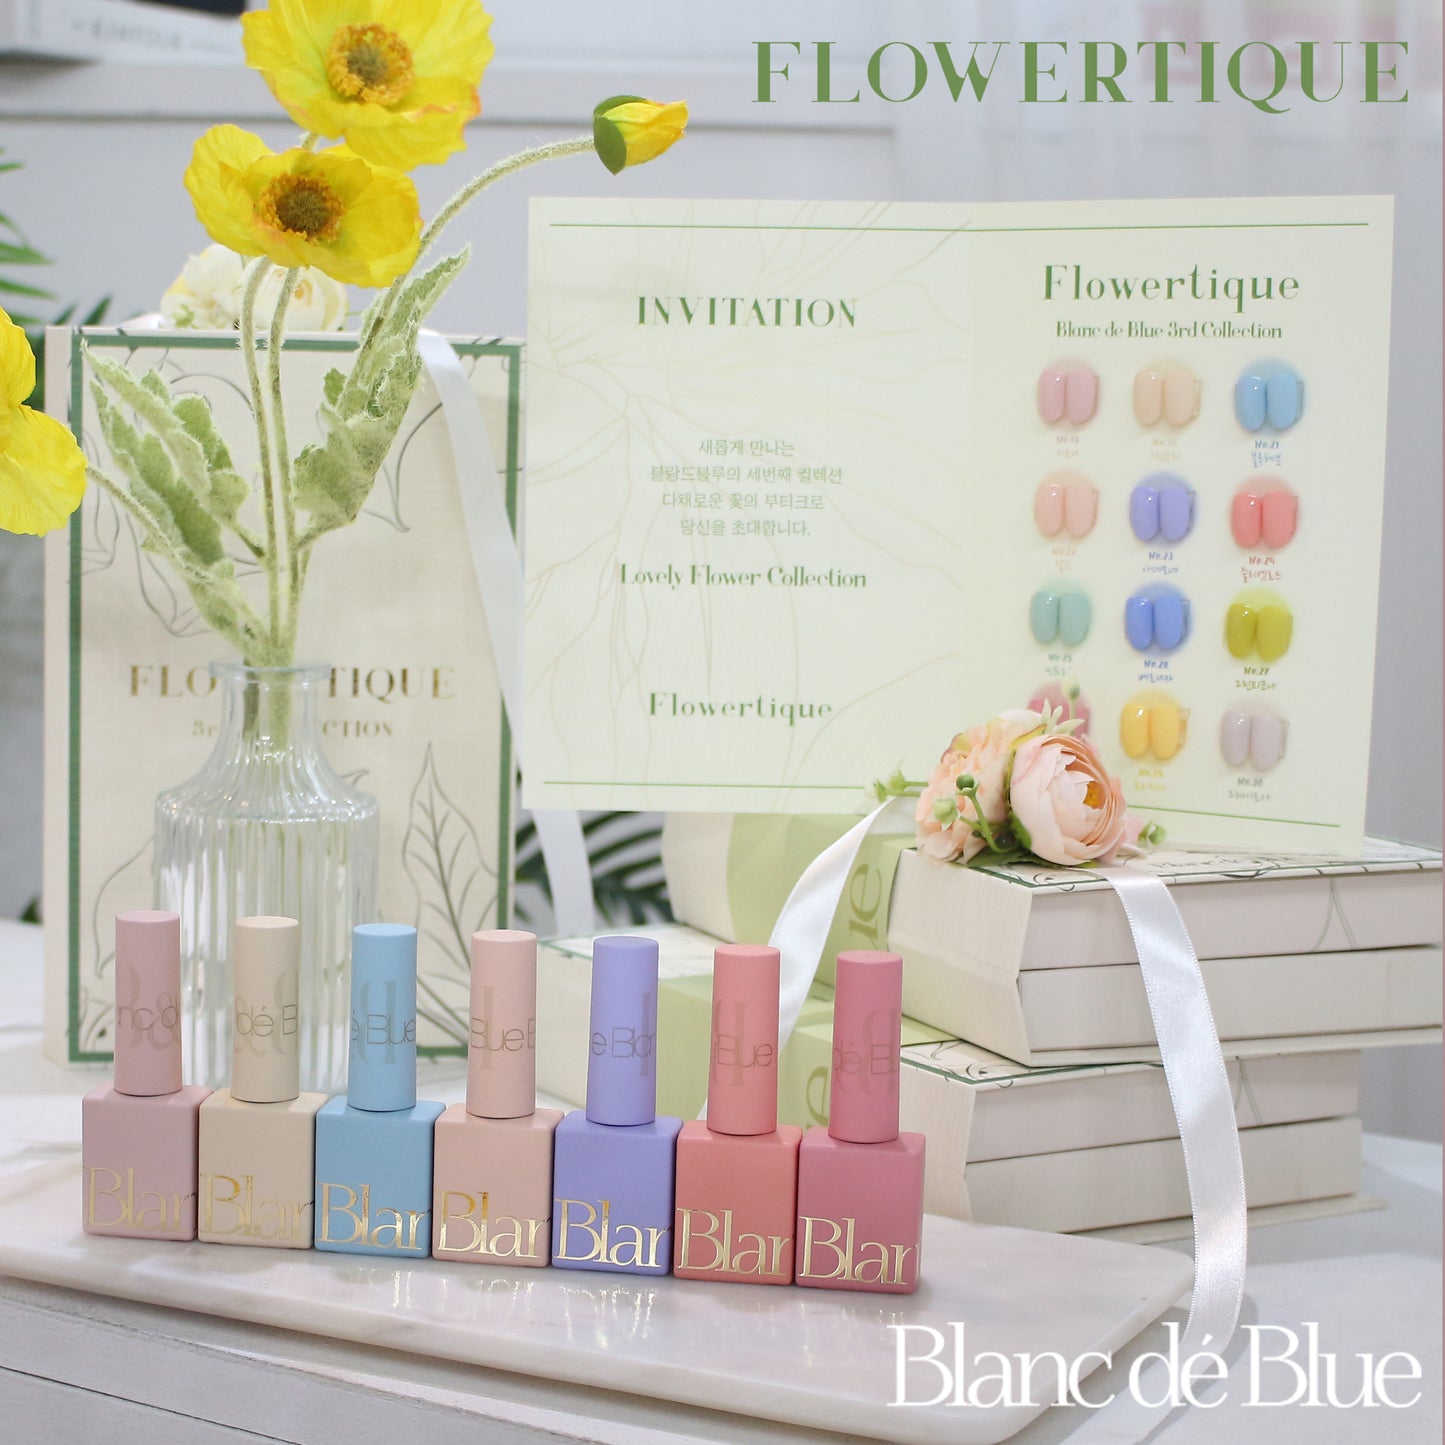 BLANC DE BLUE Flowertique collection